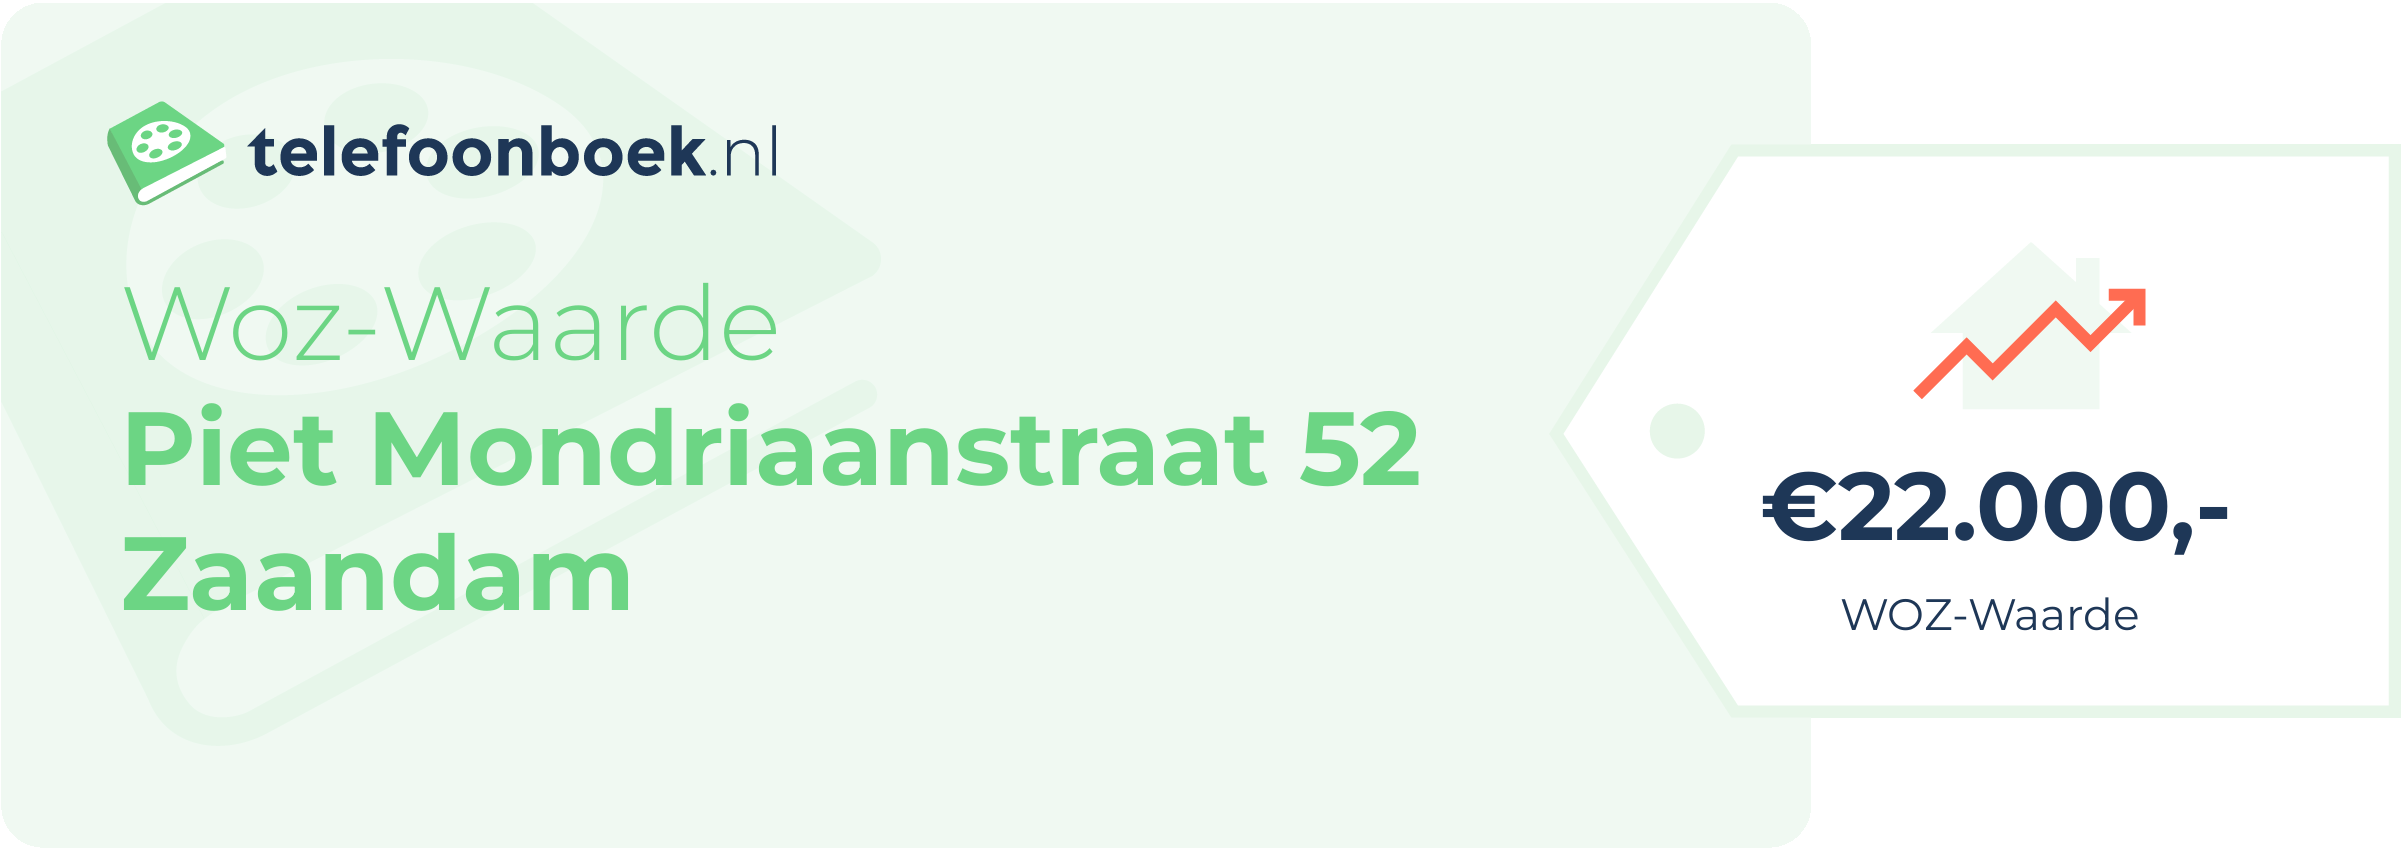 WOZ-waarde Piet Mondriaanstraat 52 Zaandam